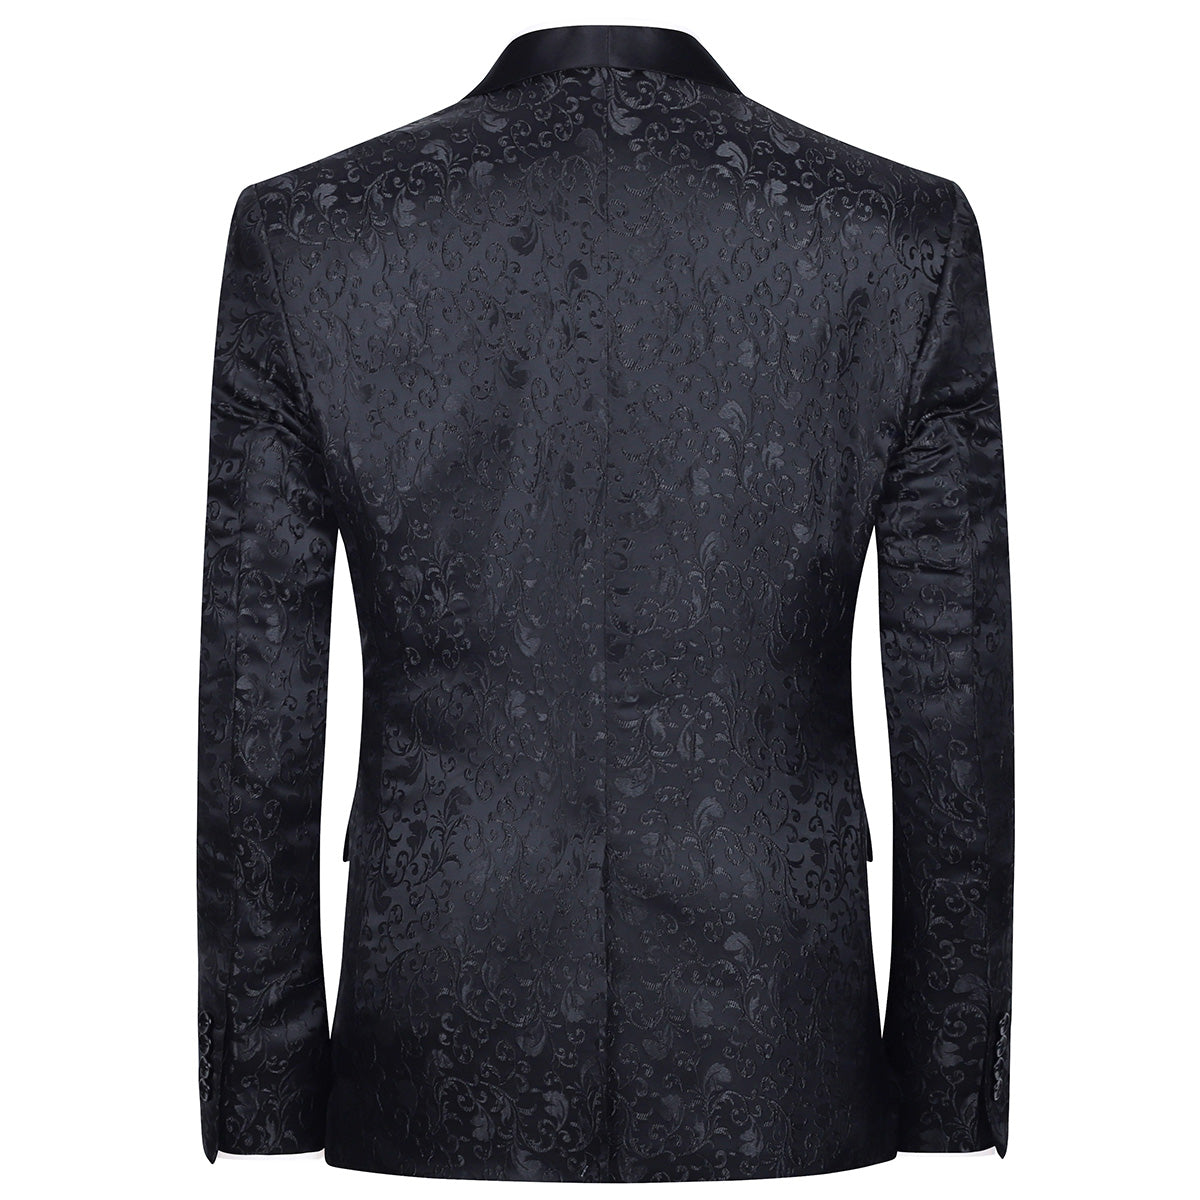 Men's Floral Jacquard Dress Suit Jacket Printed Tux Blazer Black